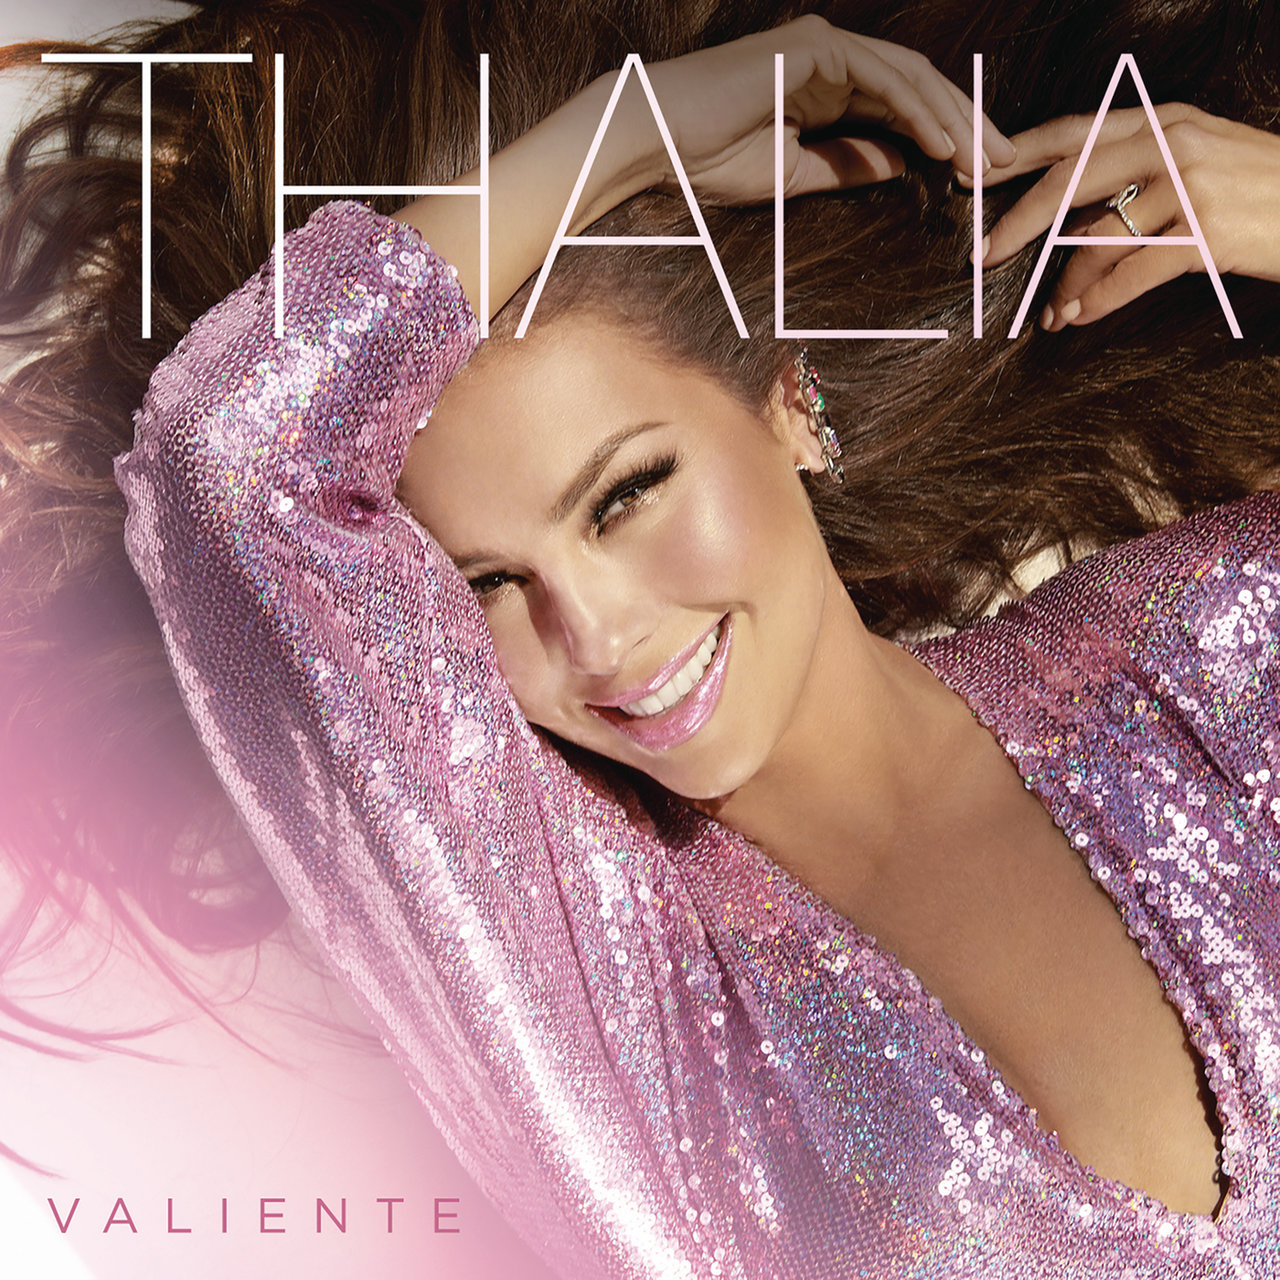 Thalía — Valiente cover artwork